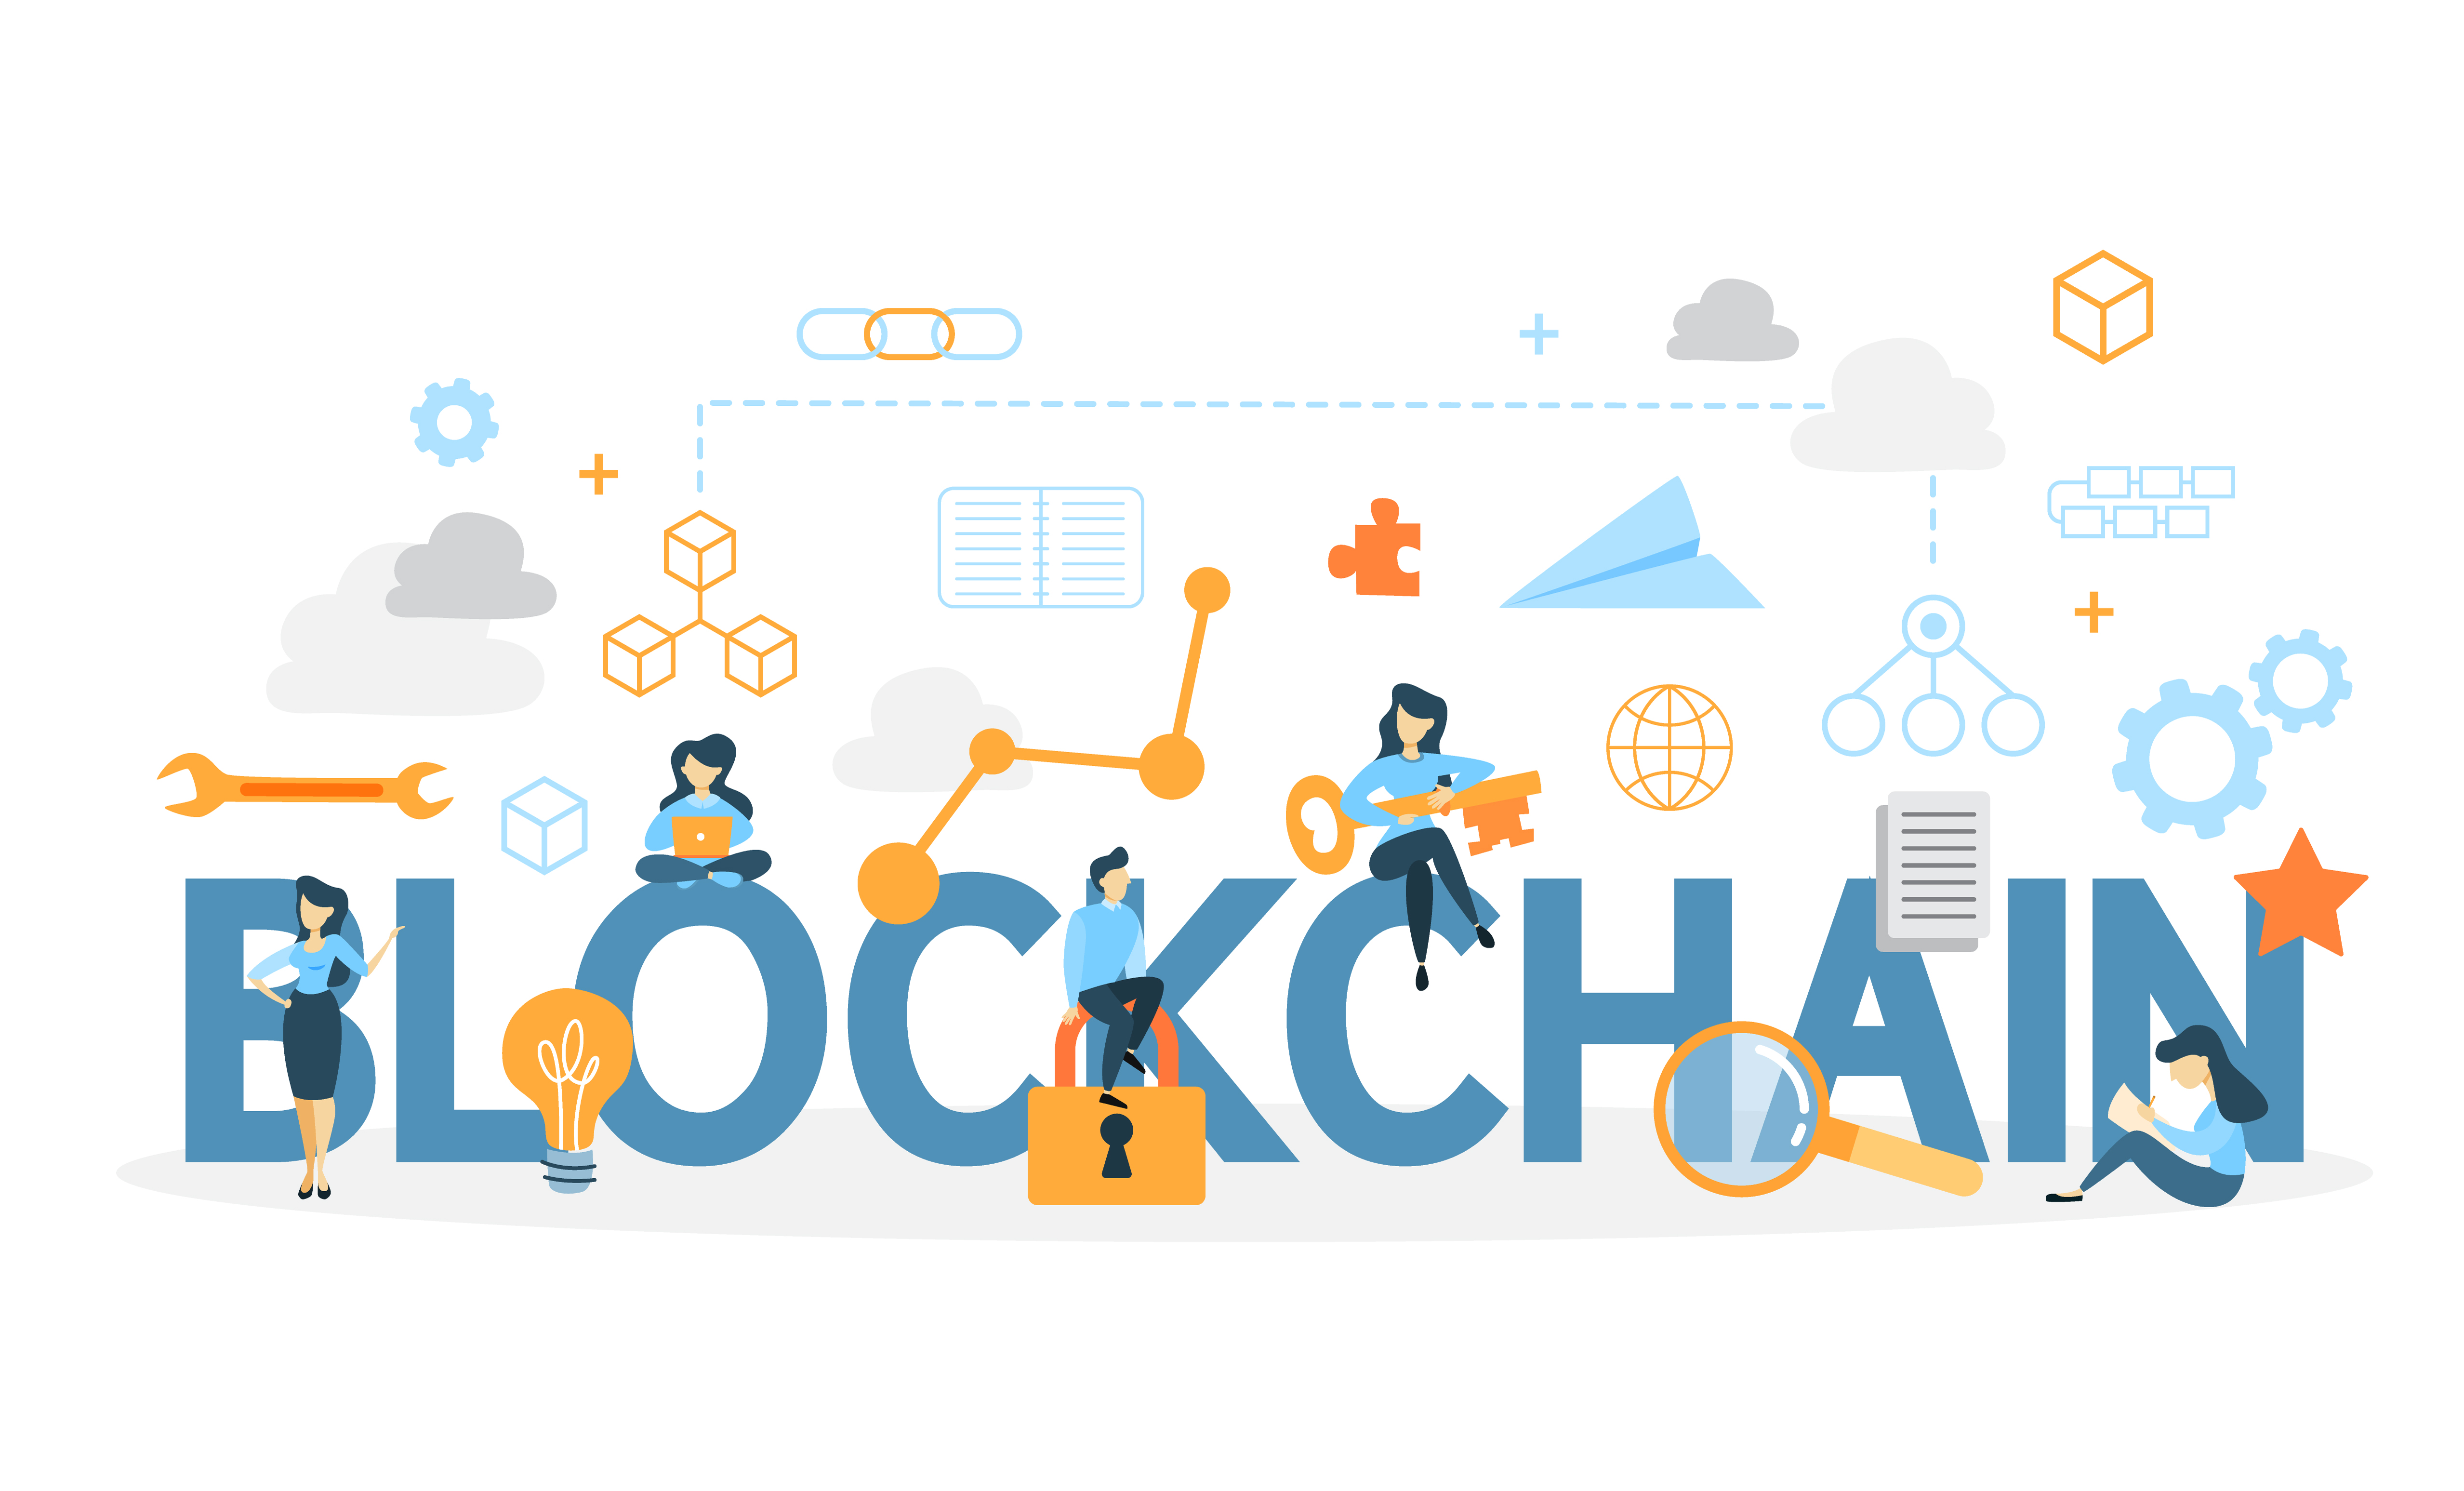 ¿Qué es Blockchain?